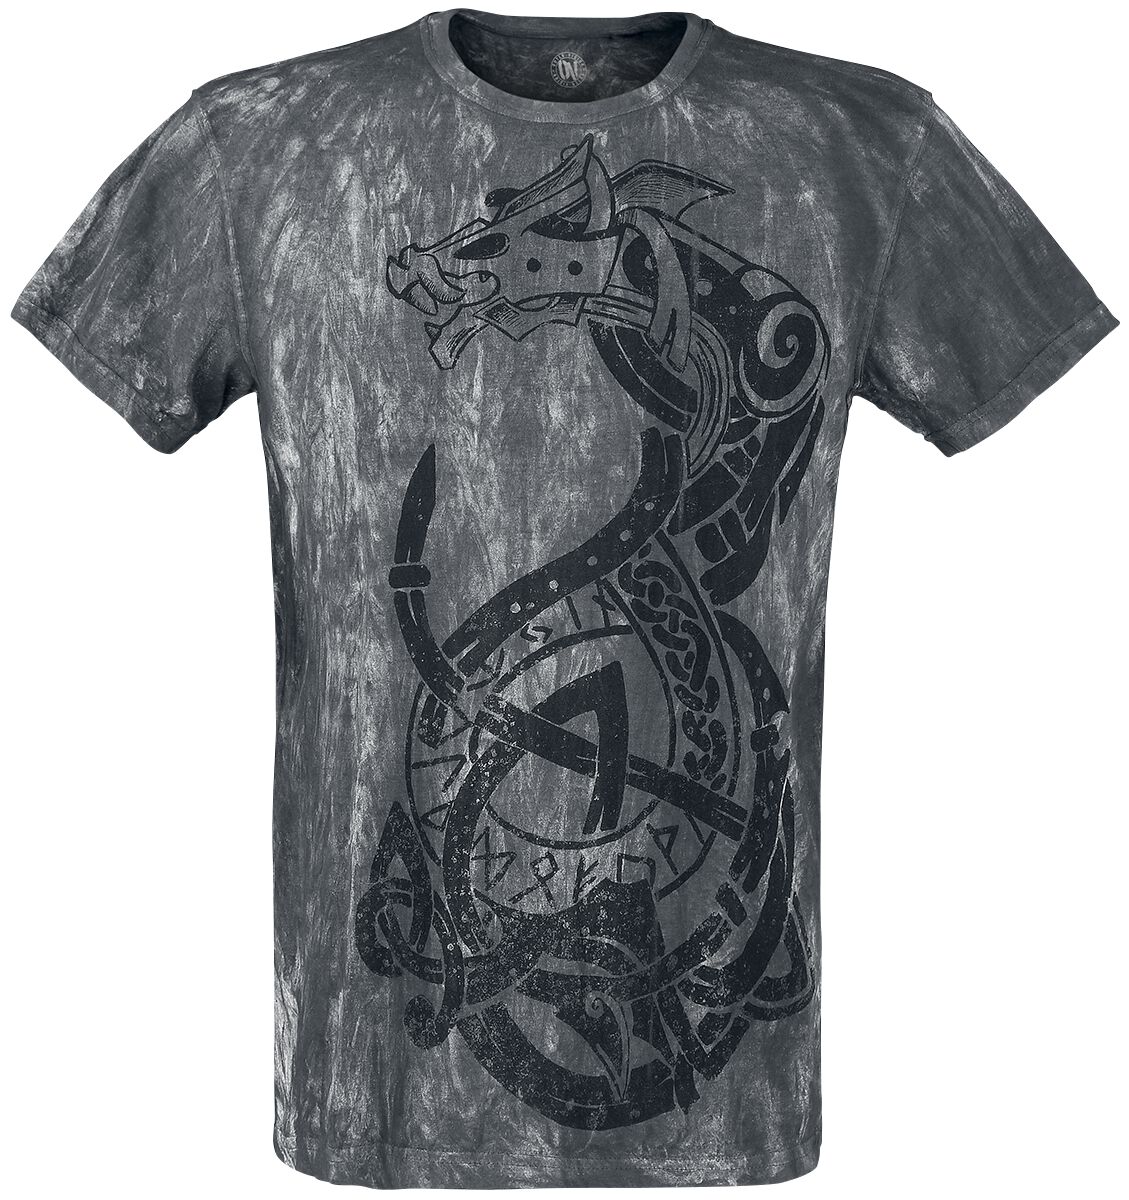 Outer Vision - Gothic T-Shirt - Viking Warrior - S bis 4XL - für Männer - Größe 3XL - grau